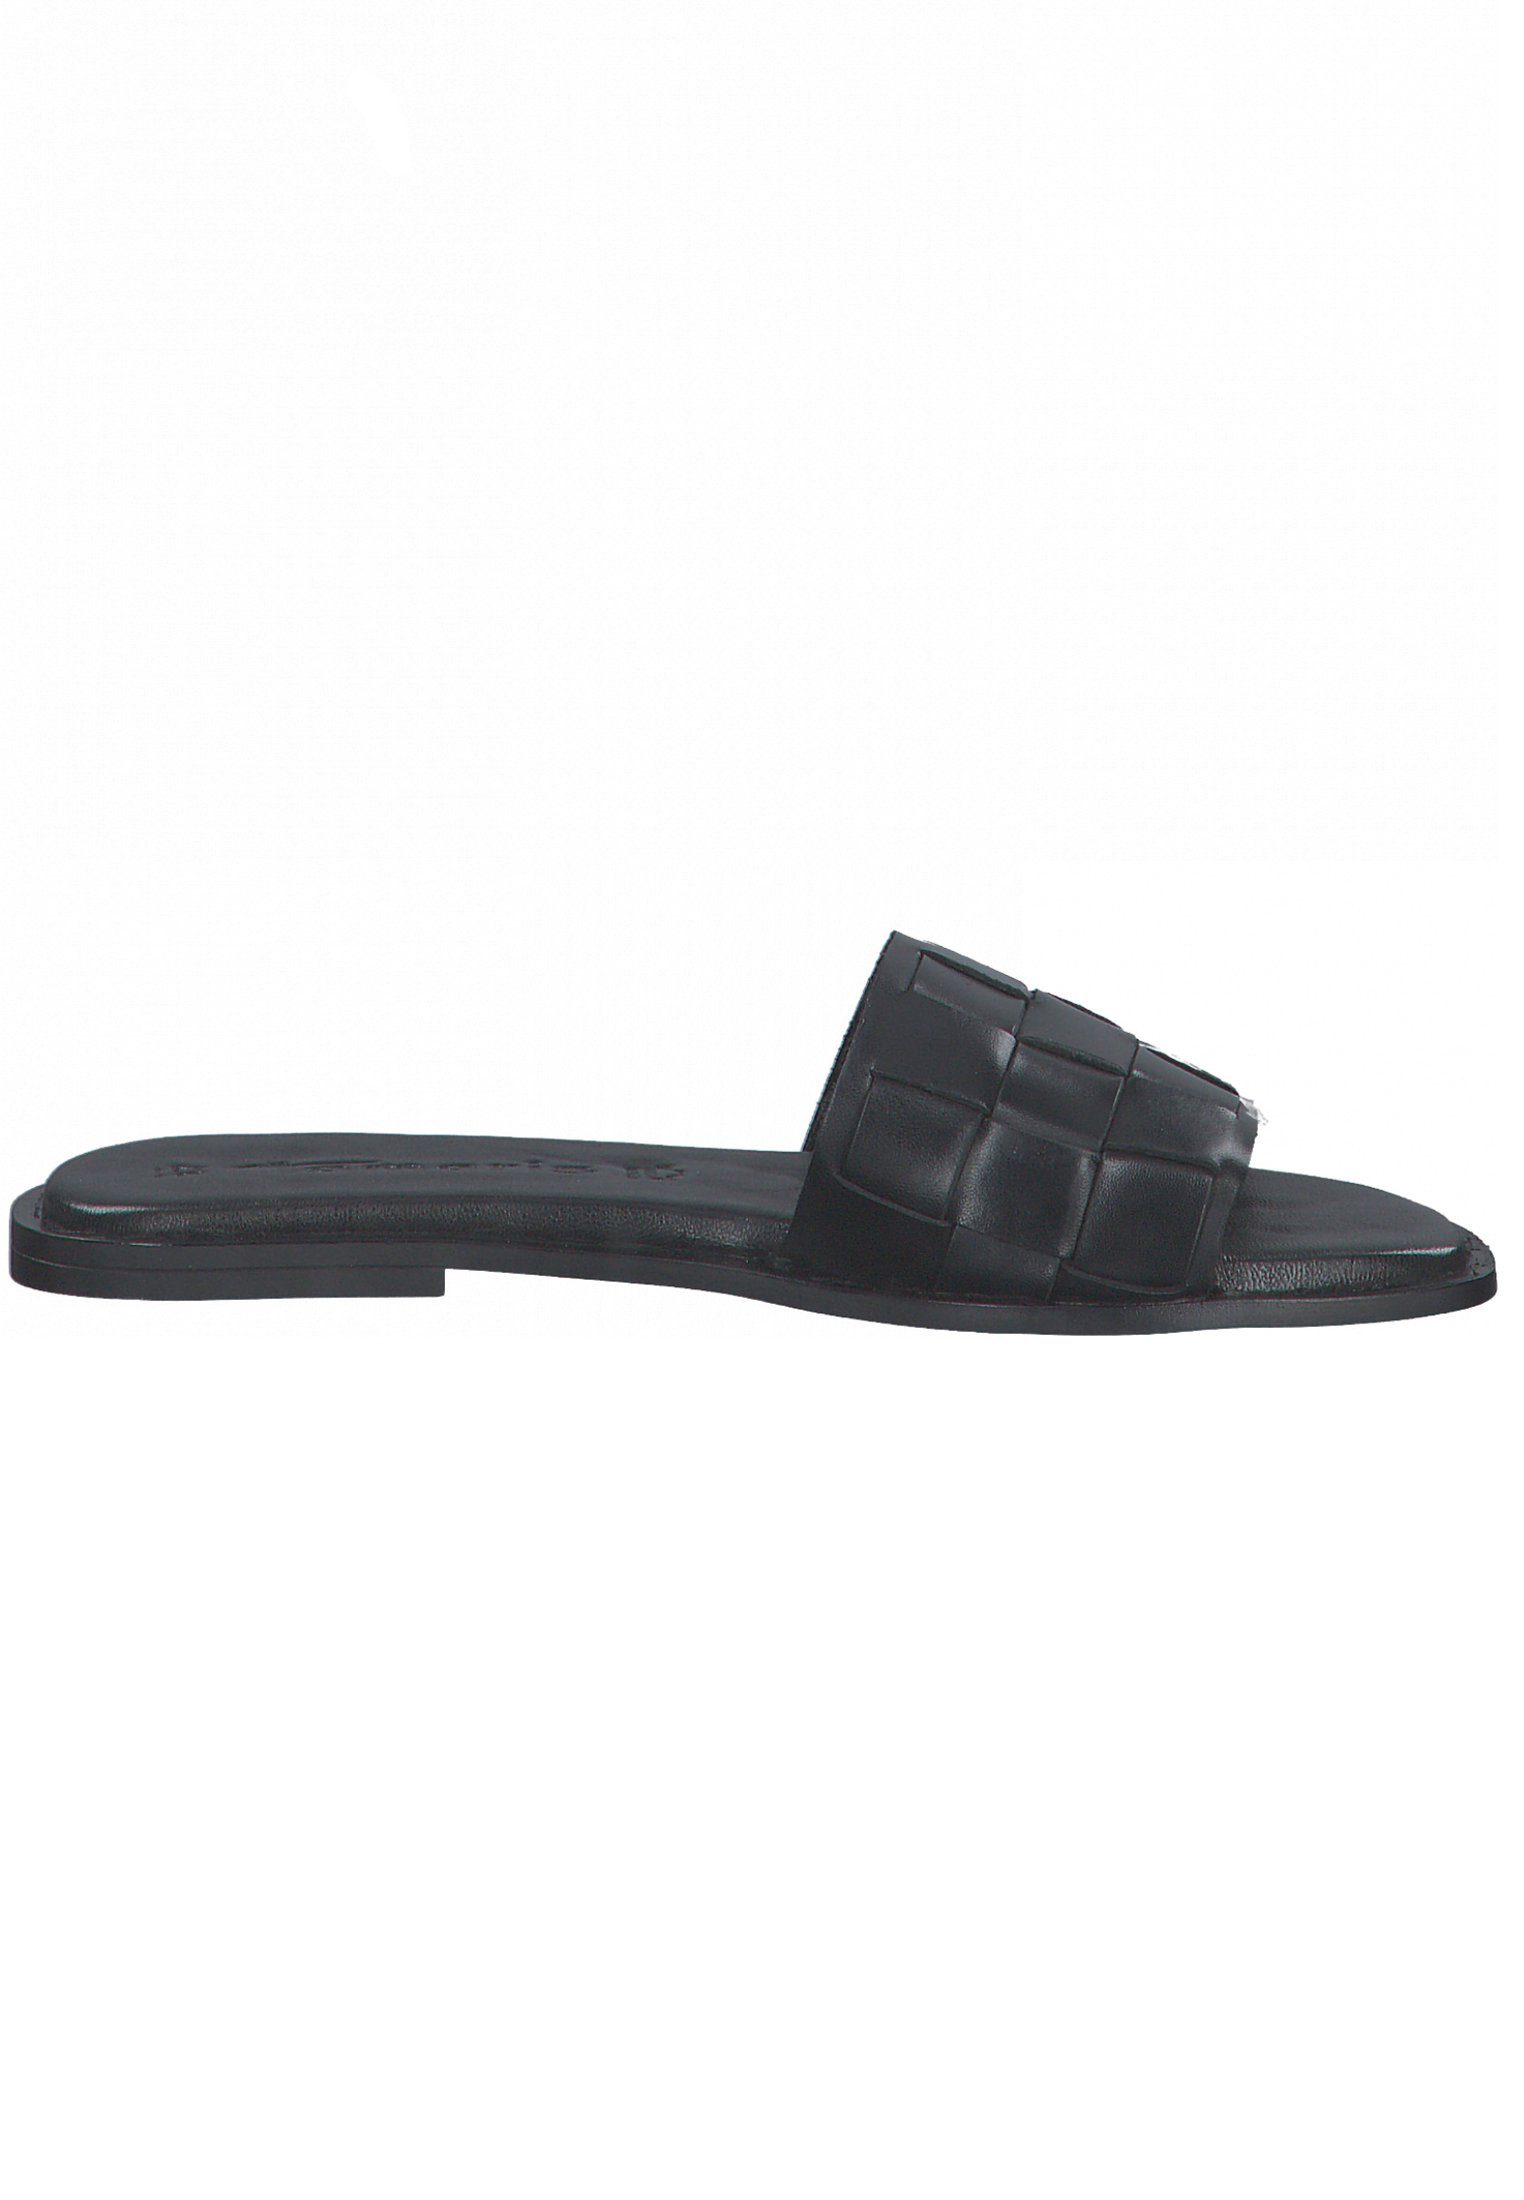 Leather 003 1-27122-28 Sandale Black Tamaris